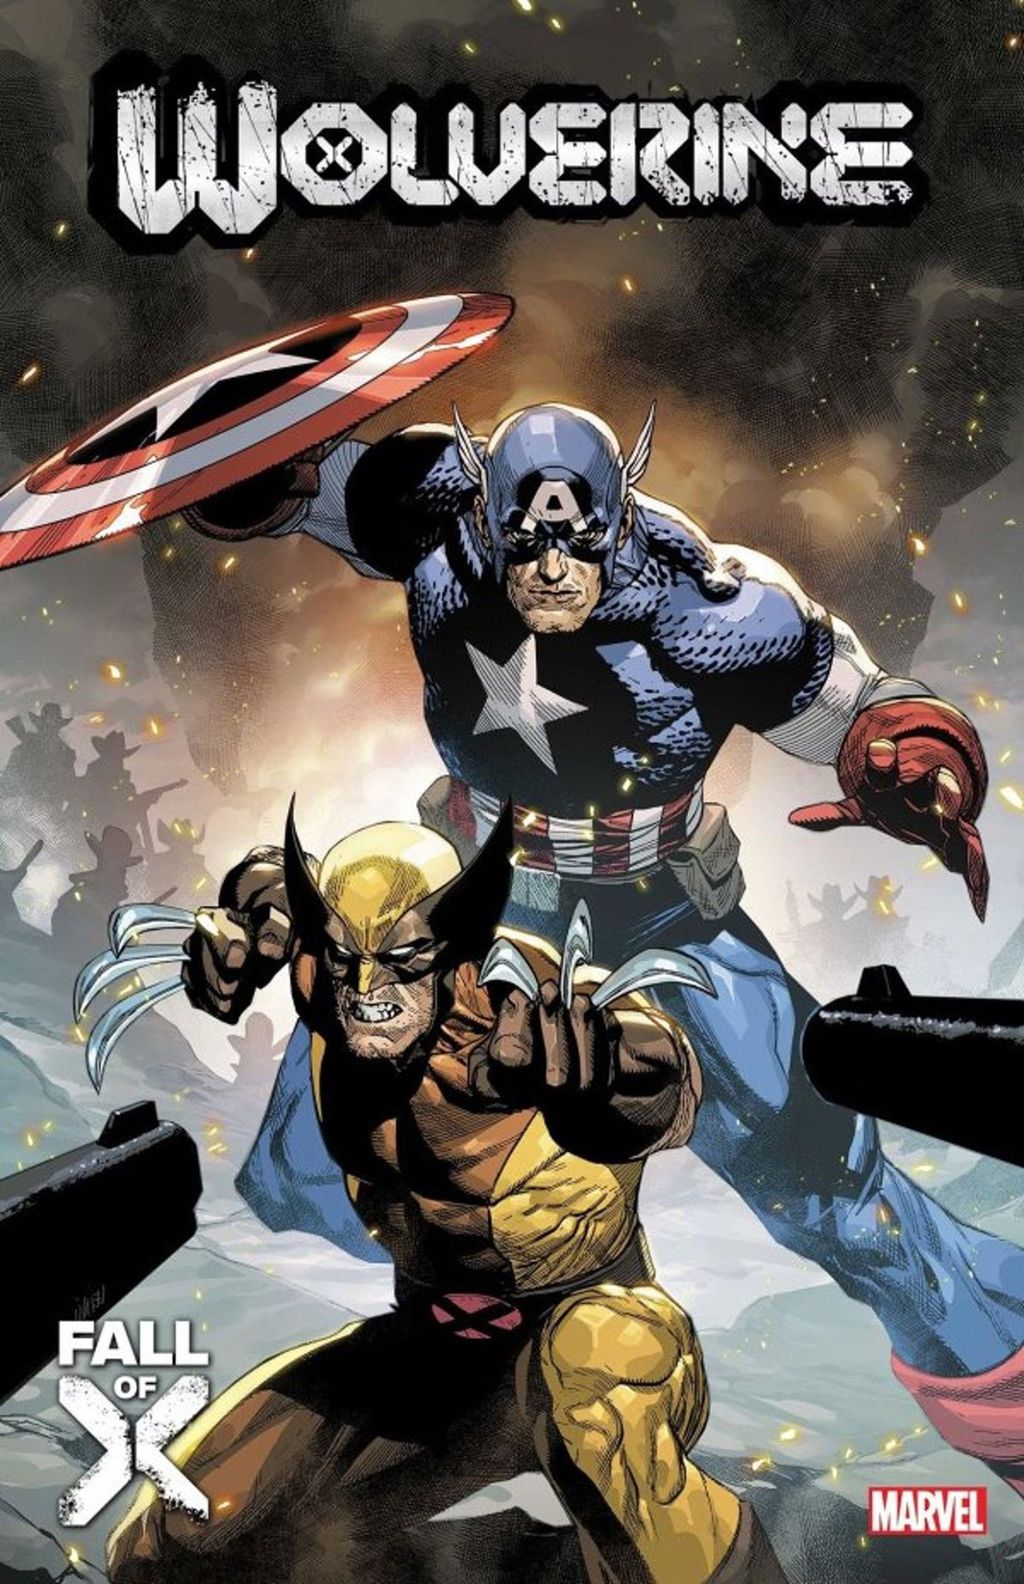 Capa da edição que reata a amizade entre Wolverine e Capitão América (Imagem: Reprodução/Marvel Comics)